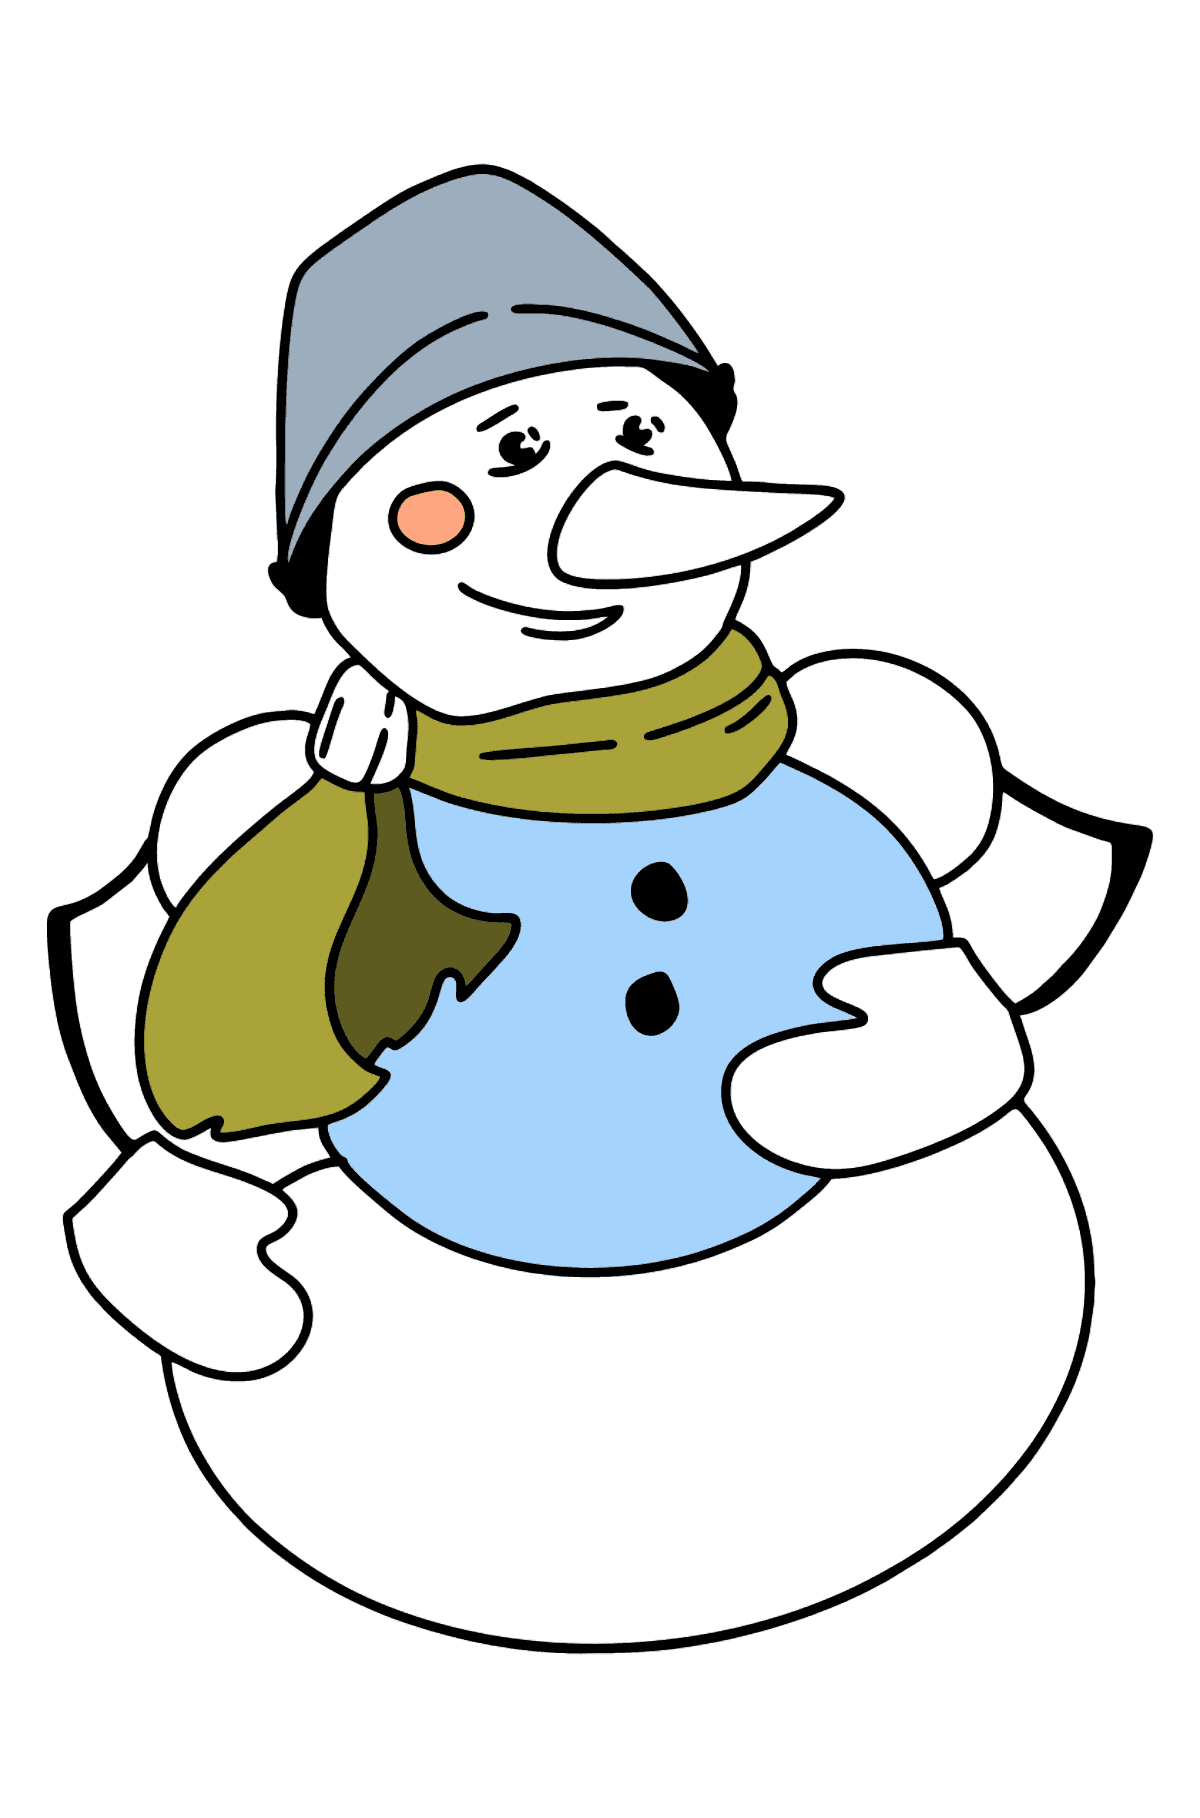 Desenho para colorir do boneco de neve - Imagens para Colorir para Crianças